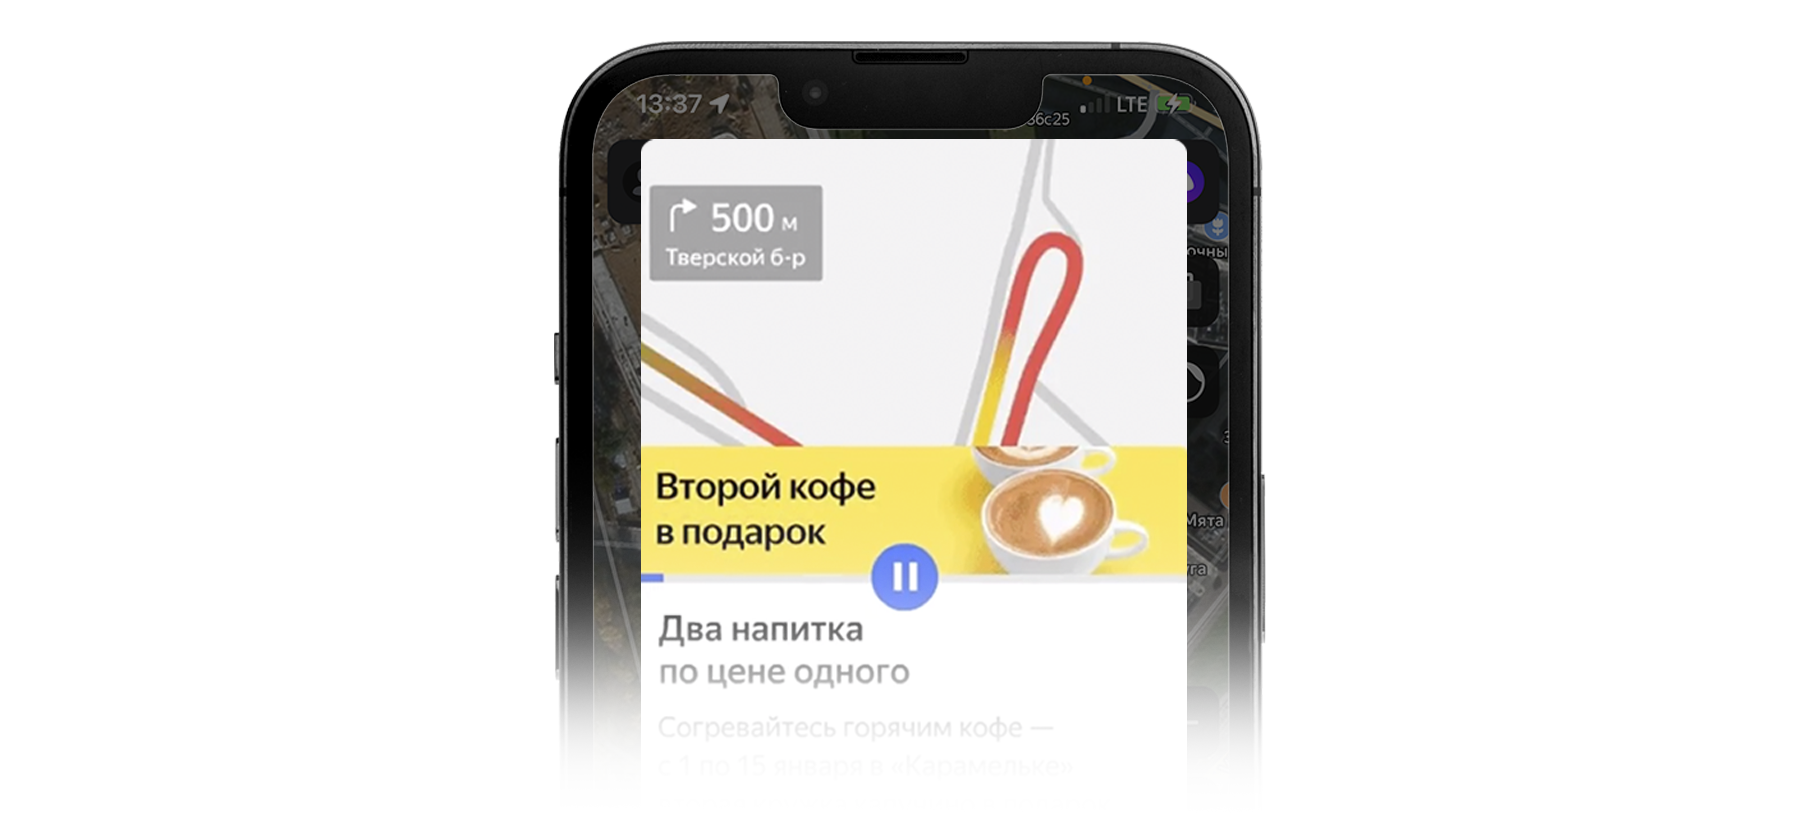 «Яндекс» разрешил размещать рекламу в «Картах» и «Навигаторе» малому бизнесу